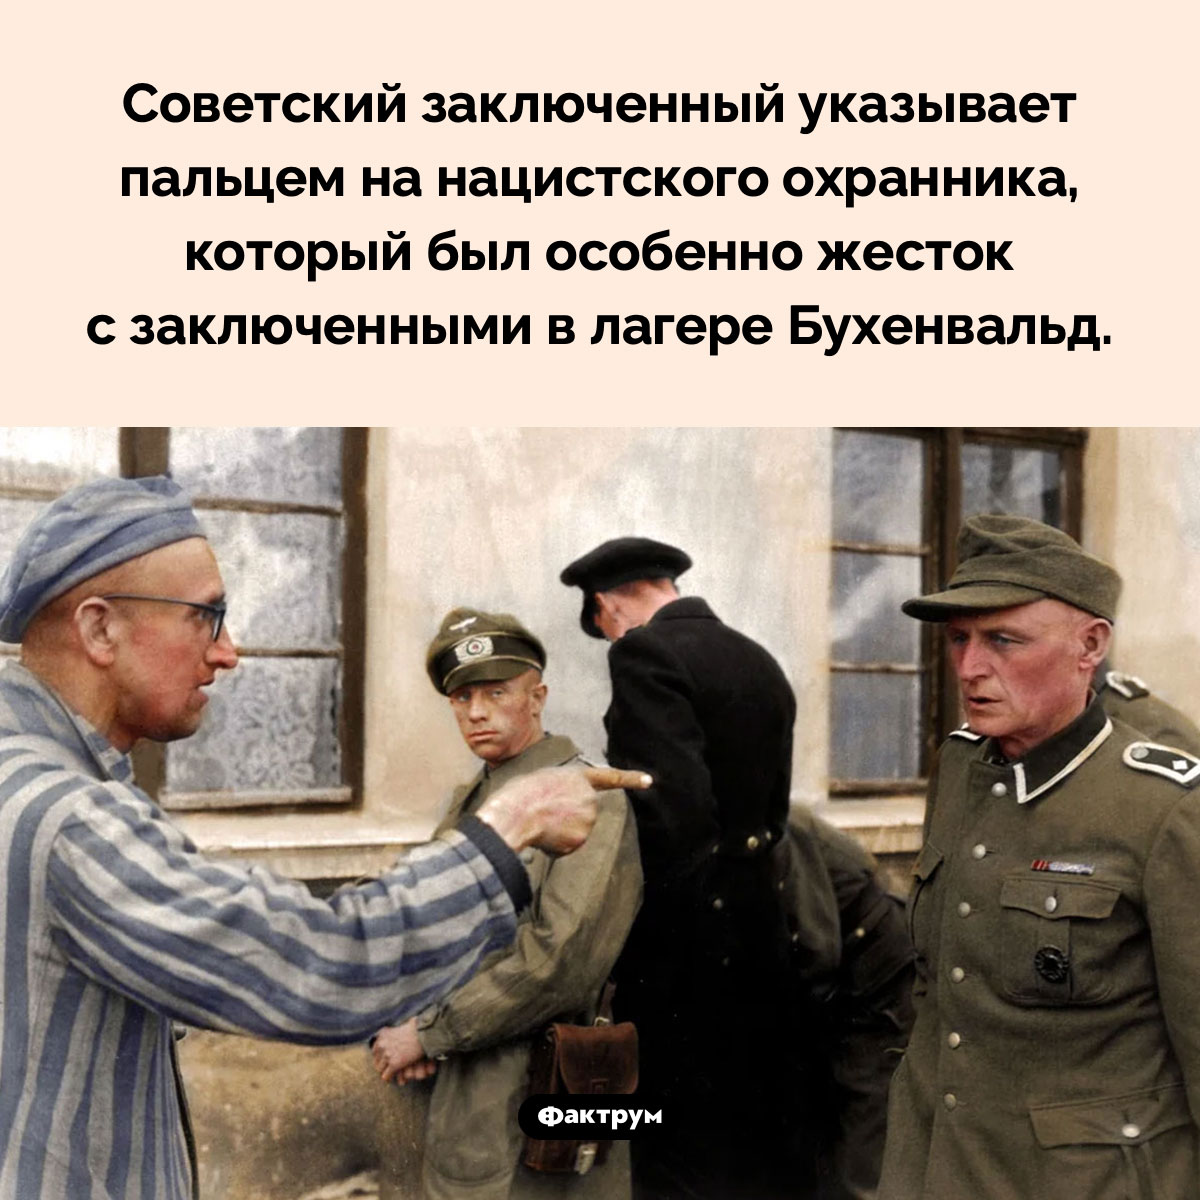 Нацистский охранник. Советский заключенный указывает пальцем на нацистского охранника, который был особенно жесток с заключенными в лагере Бухенвальд.